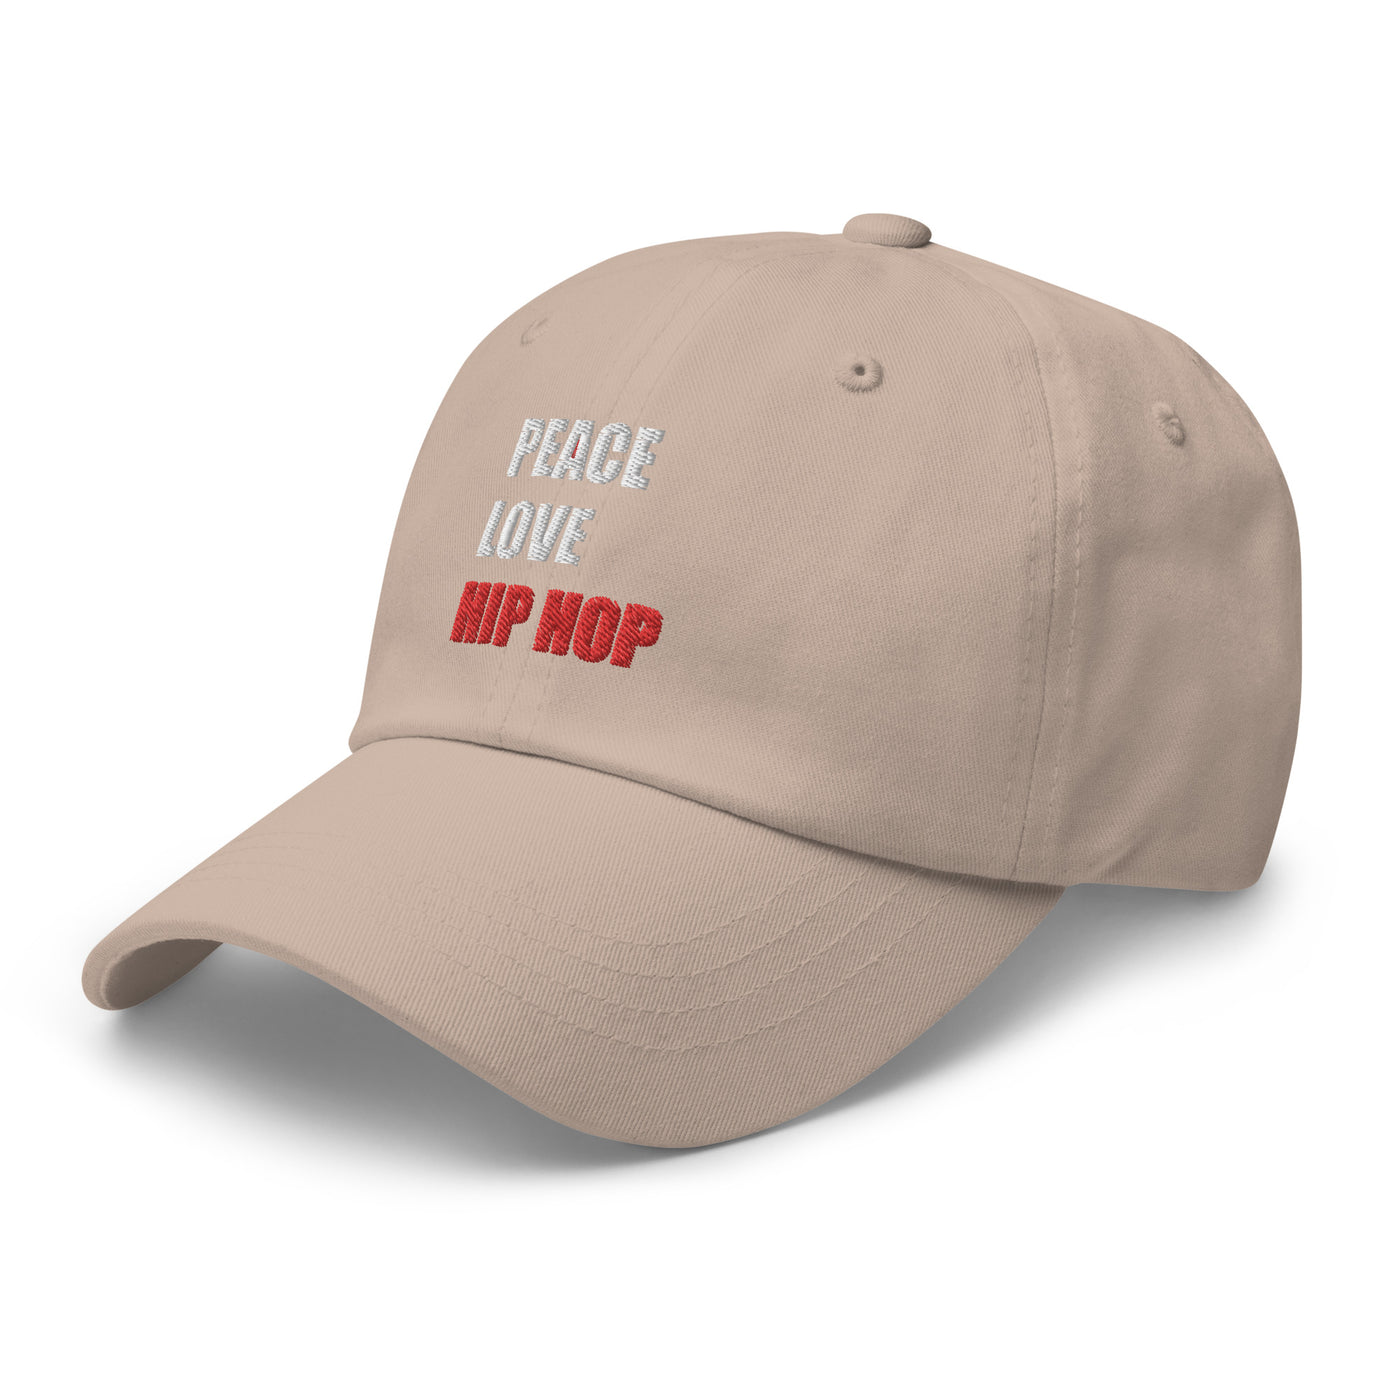 PEACE LOVE HIP HOP unisex hat